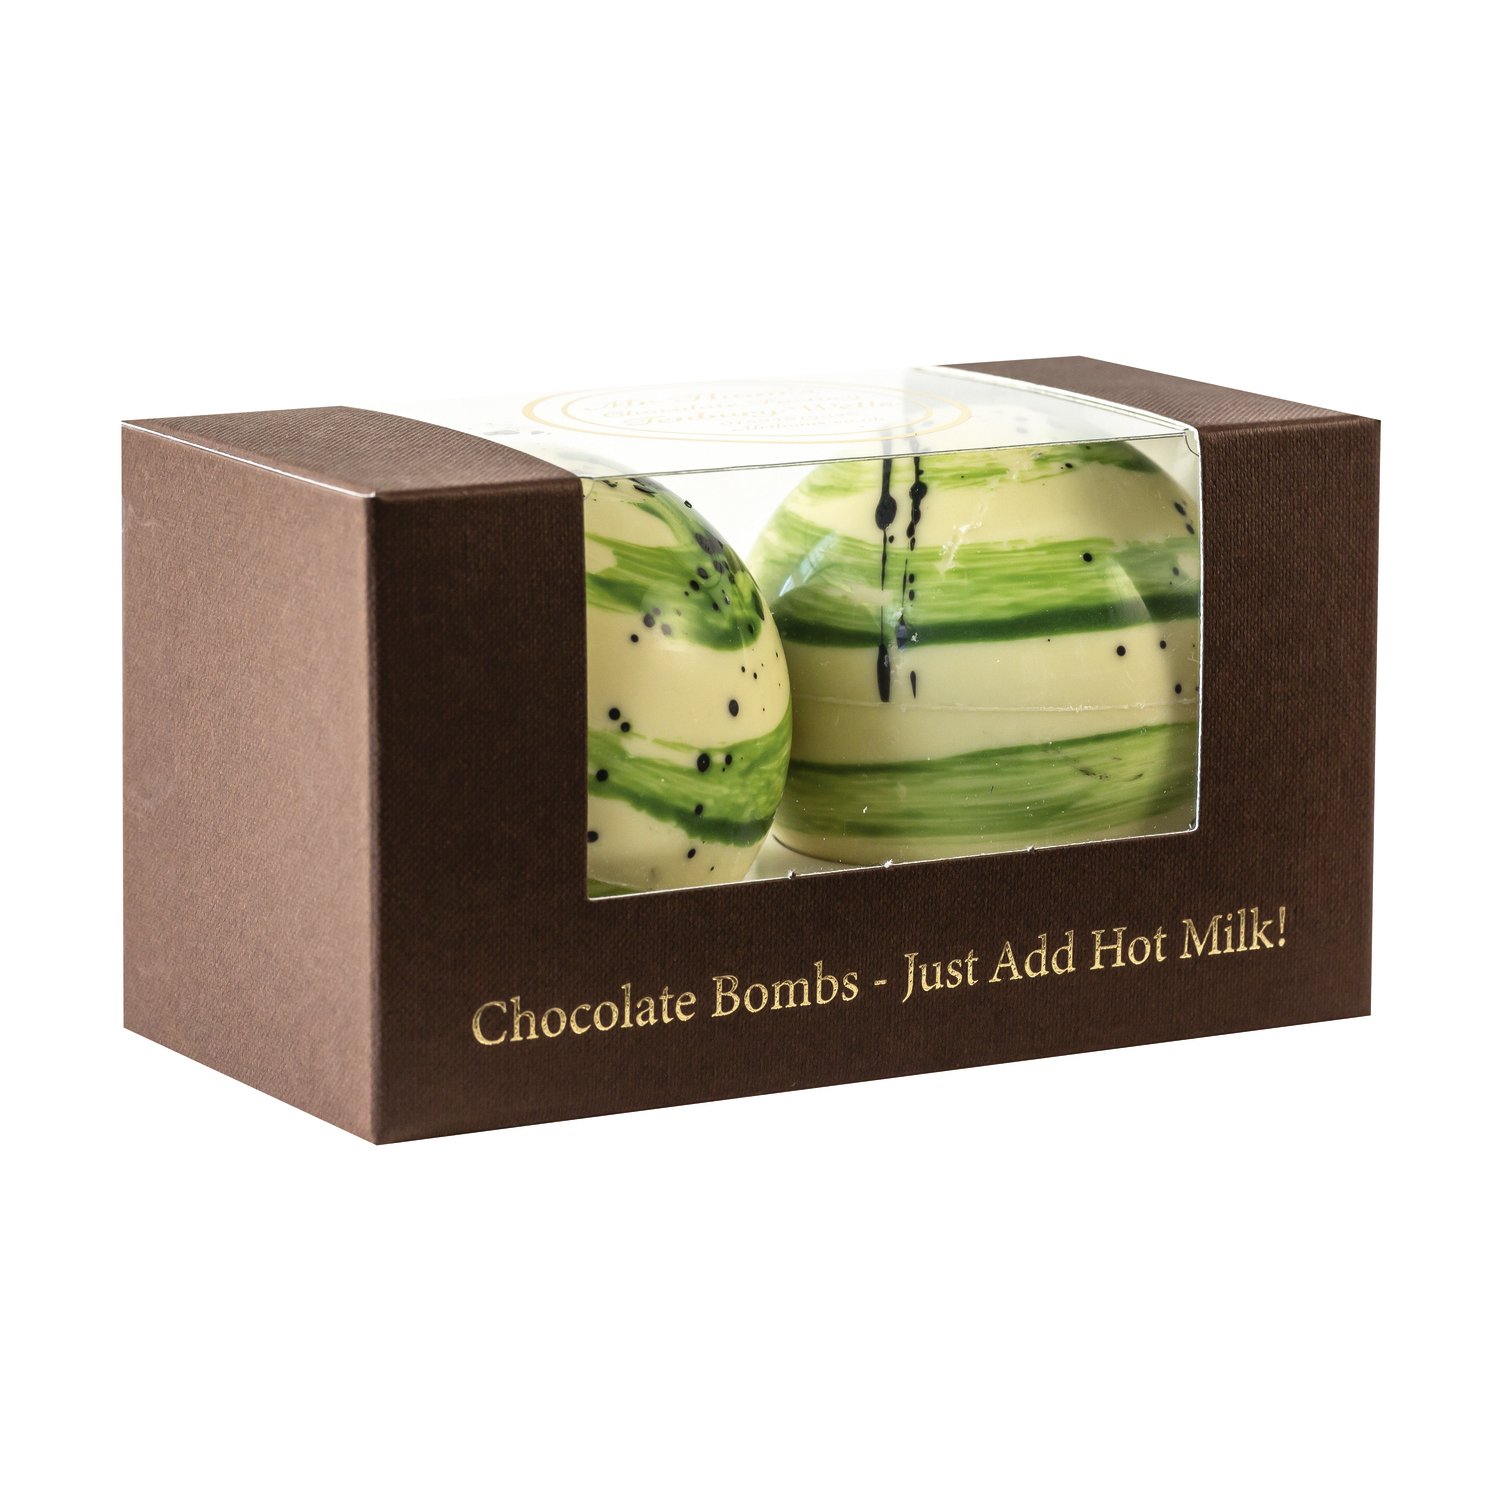 Mr Thom's duo white chocolate bomb in gift box - VAT FREE - 6x160g